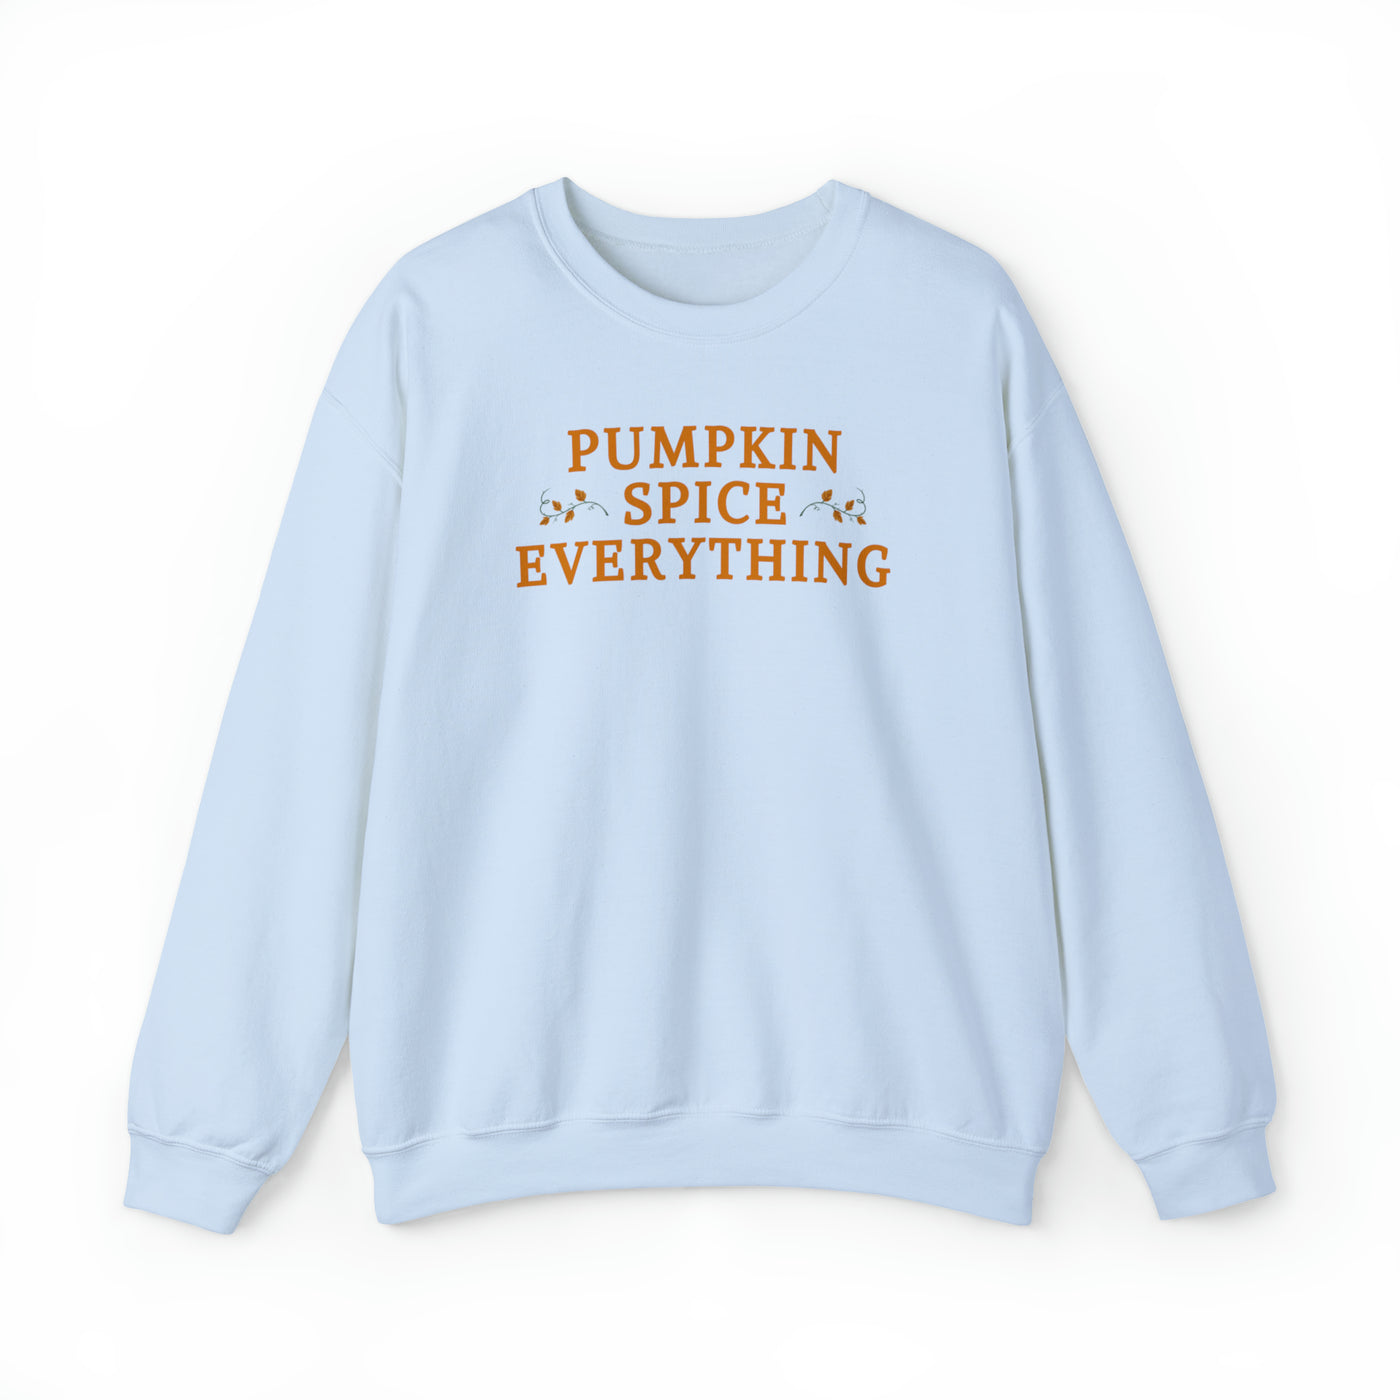 Pumpkin Spice Everything Crewneck Sweatshirt